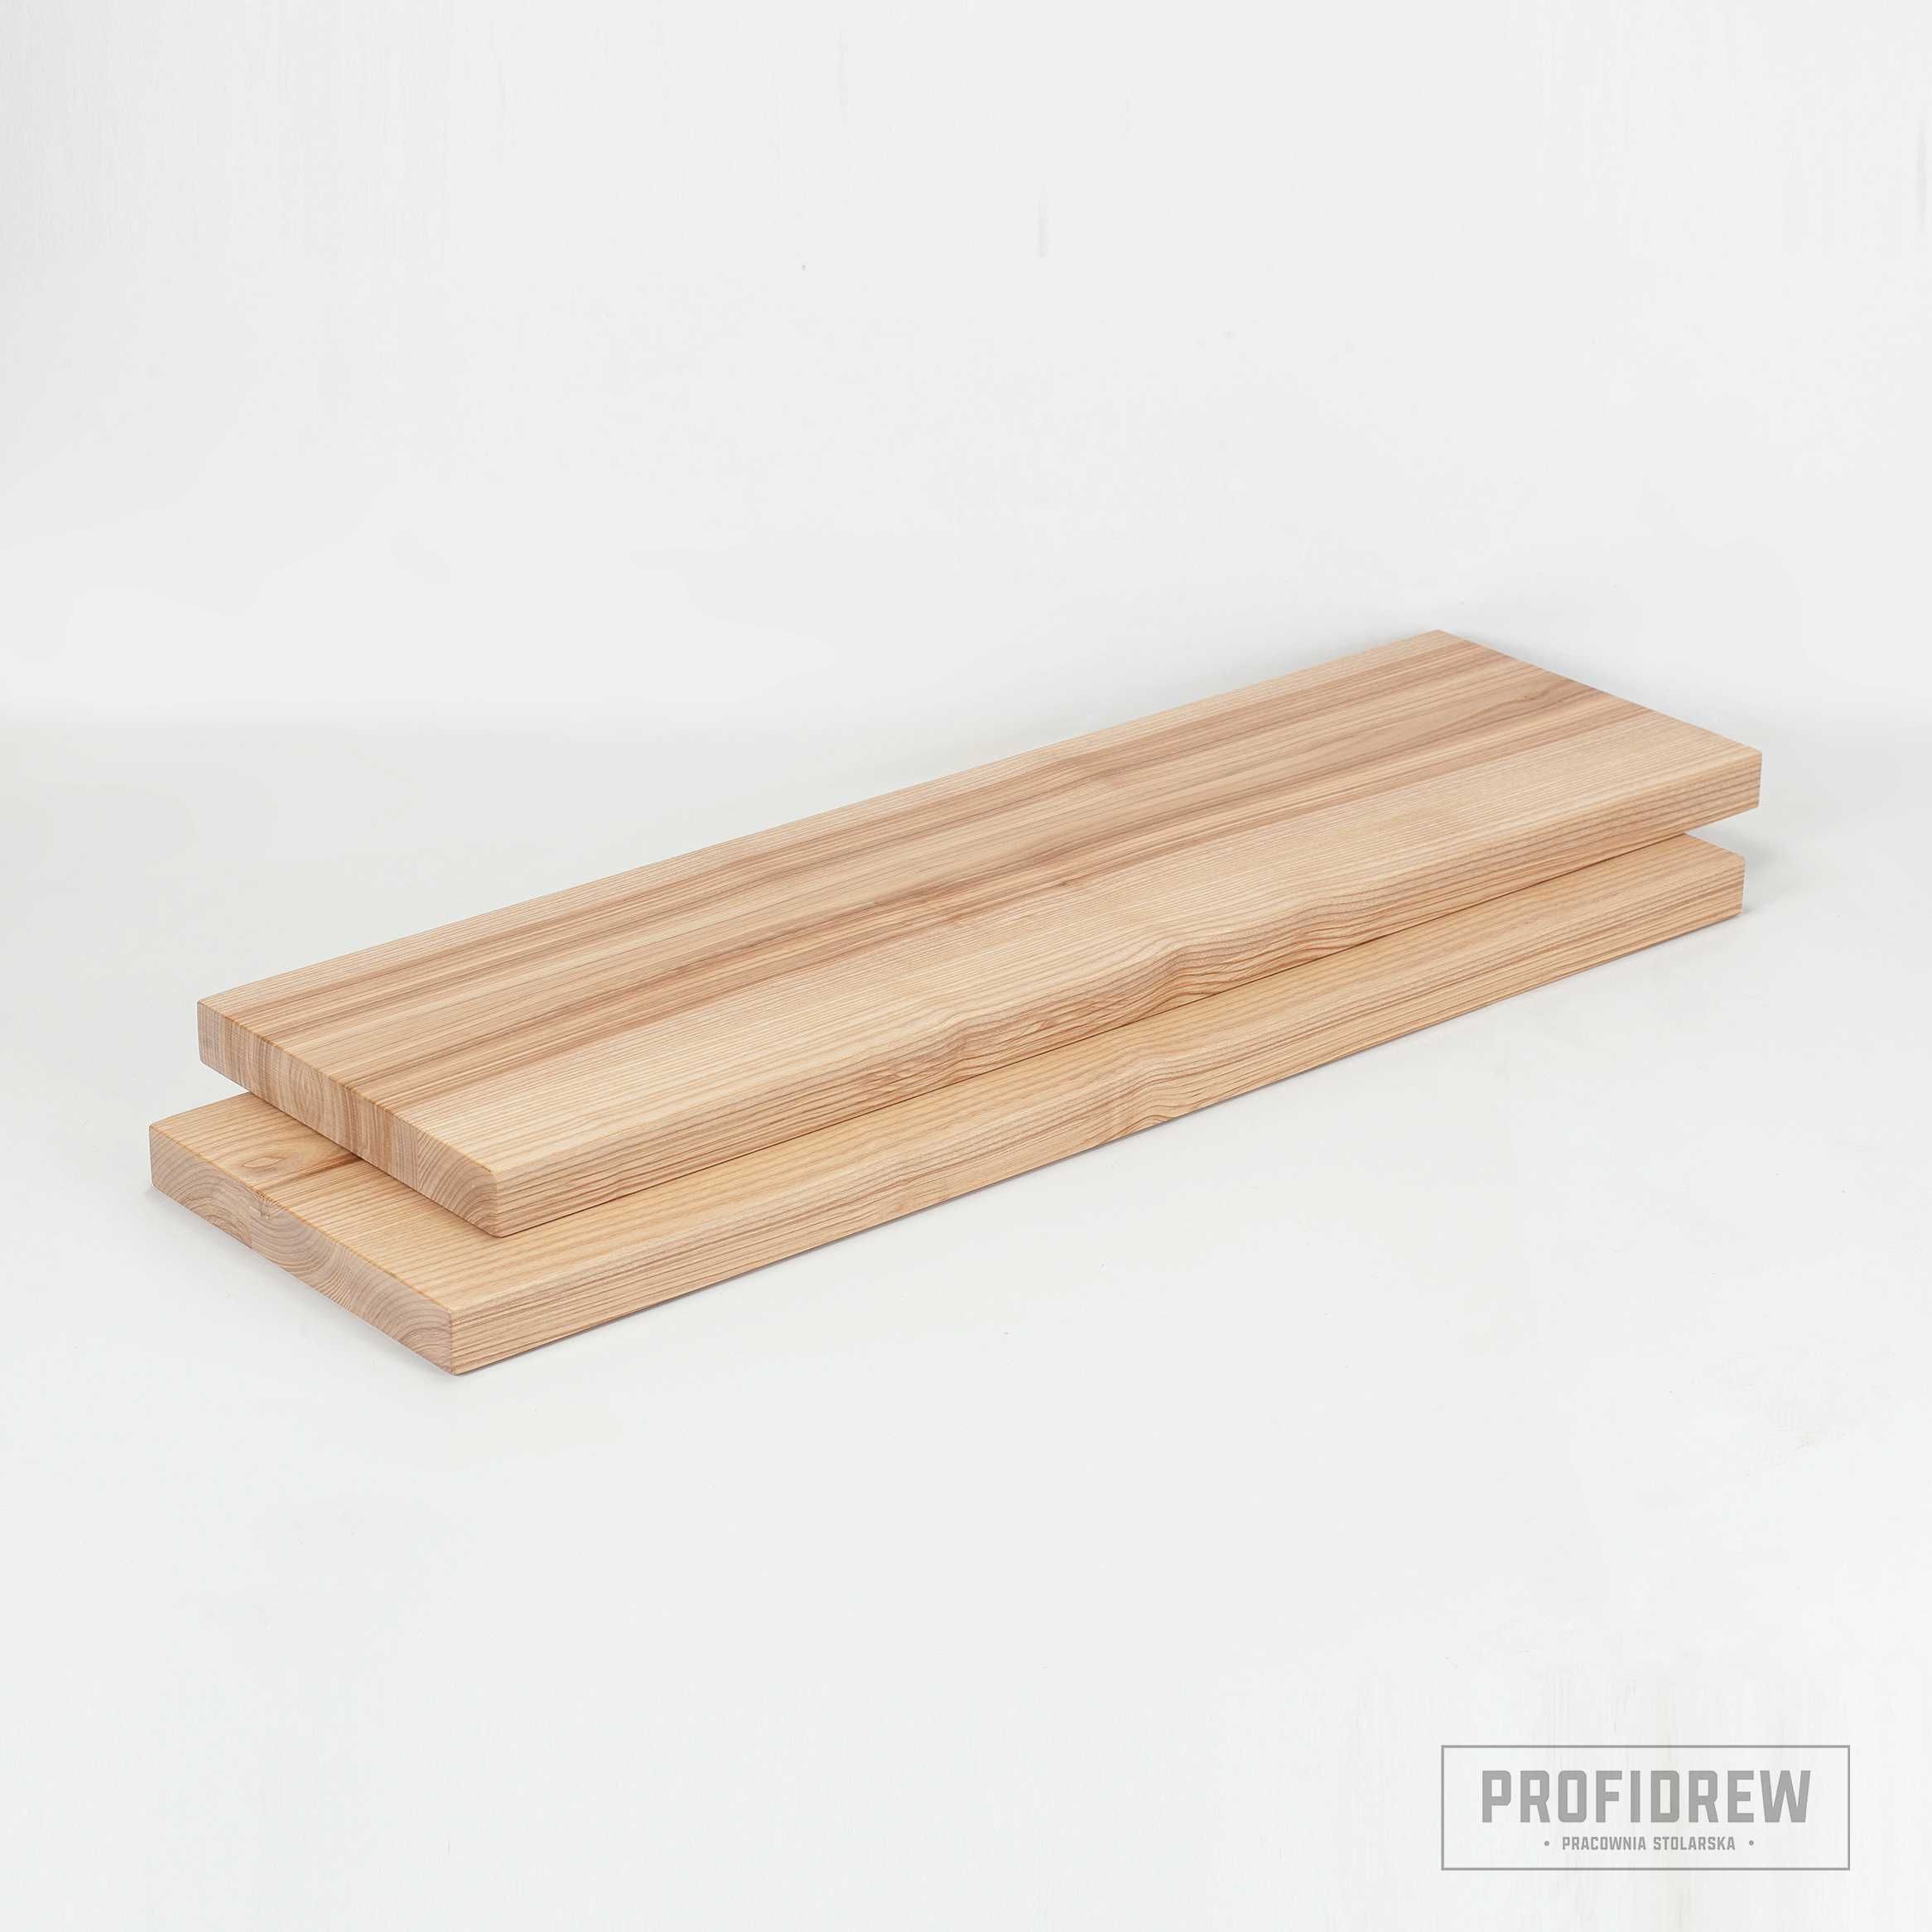 Stopnie jesionowe, lakierowane, 100x30x4  schody drewniane | Producent